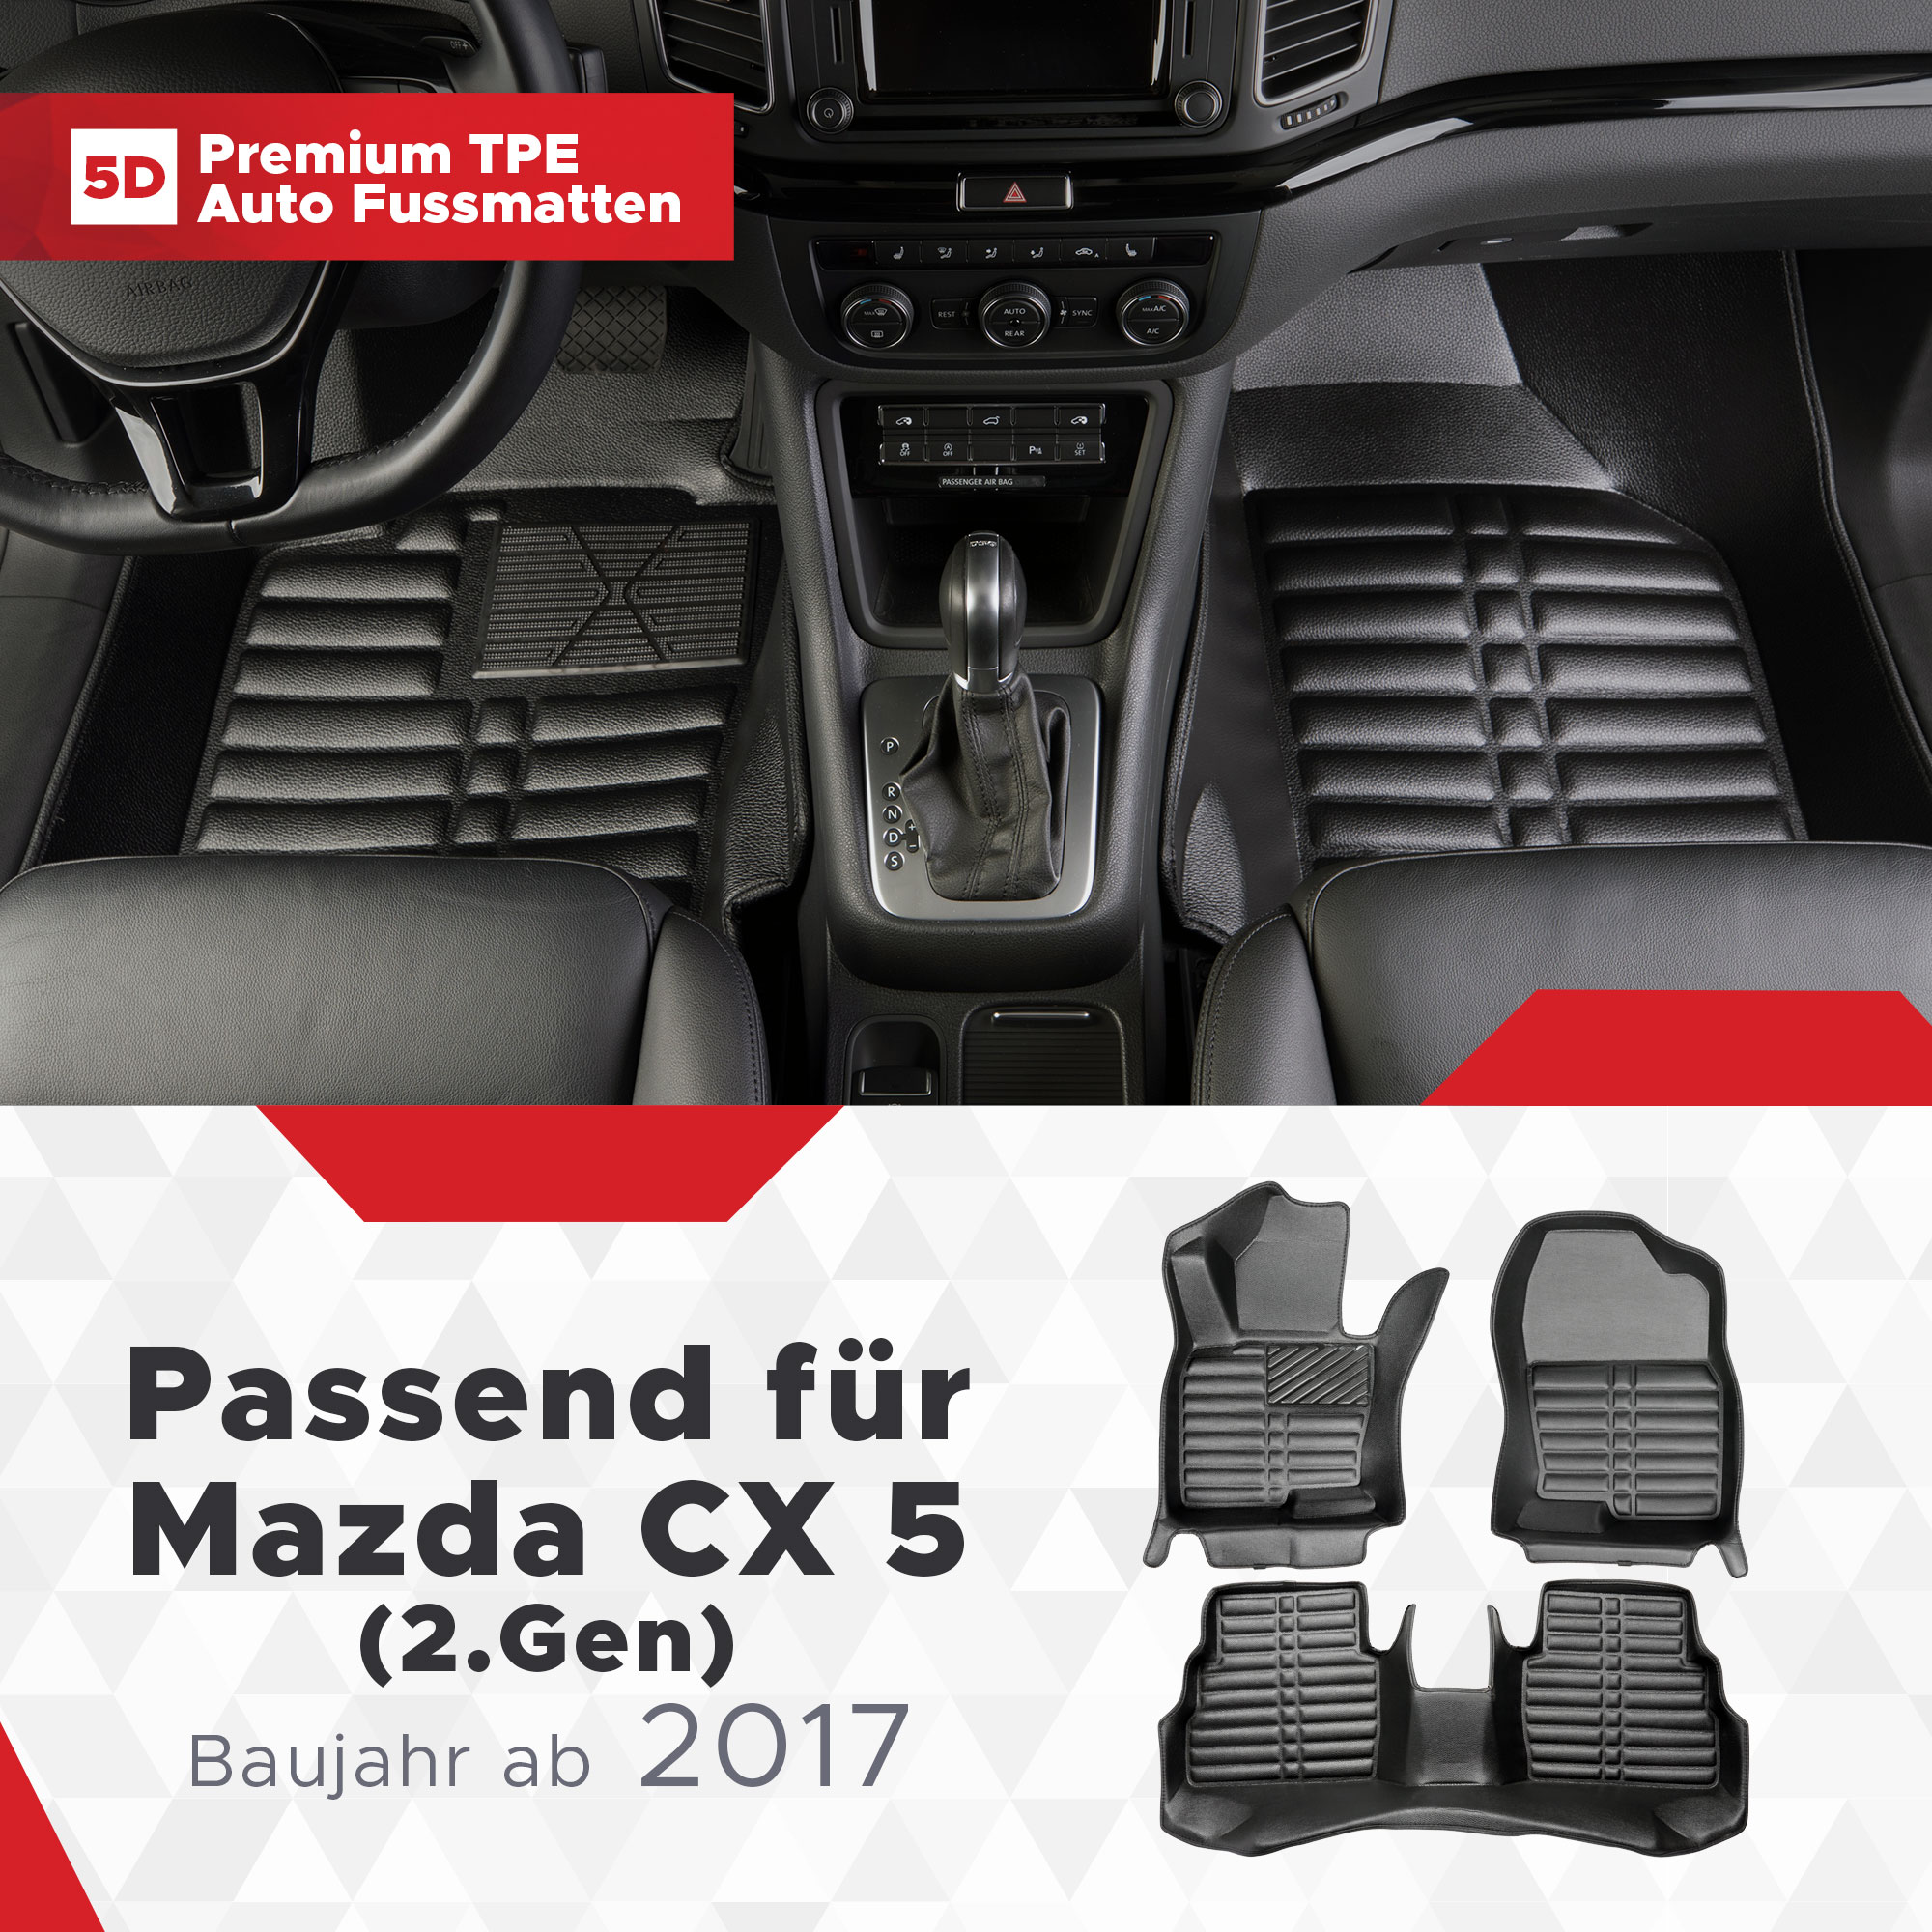 Edelstahlzubehör für den Mazda CX5 ab 2017